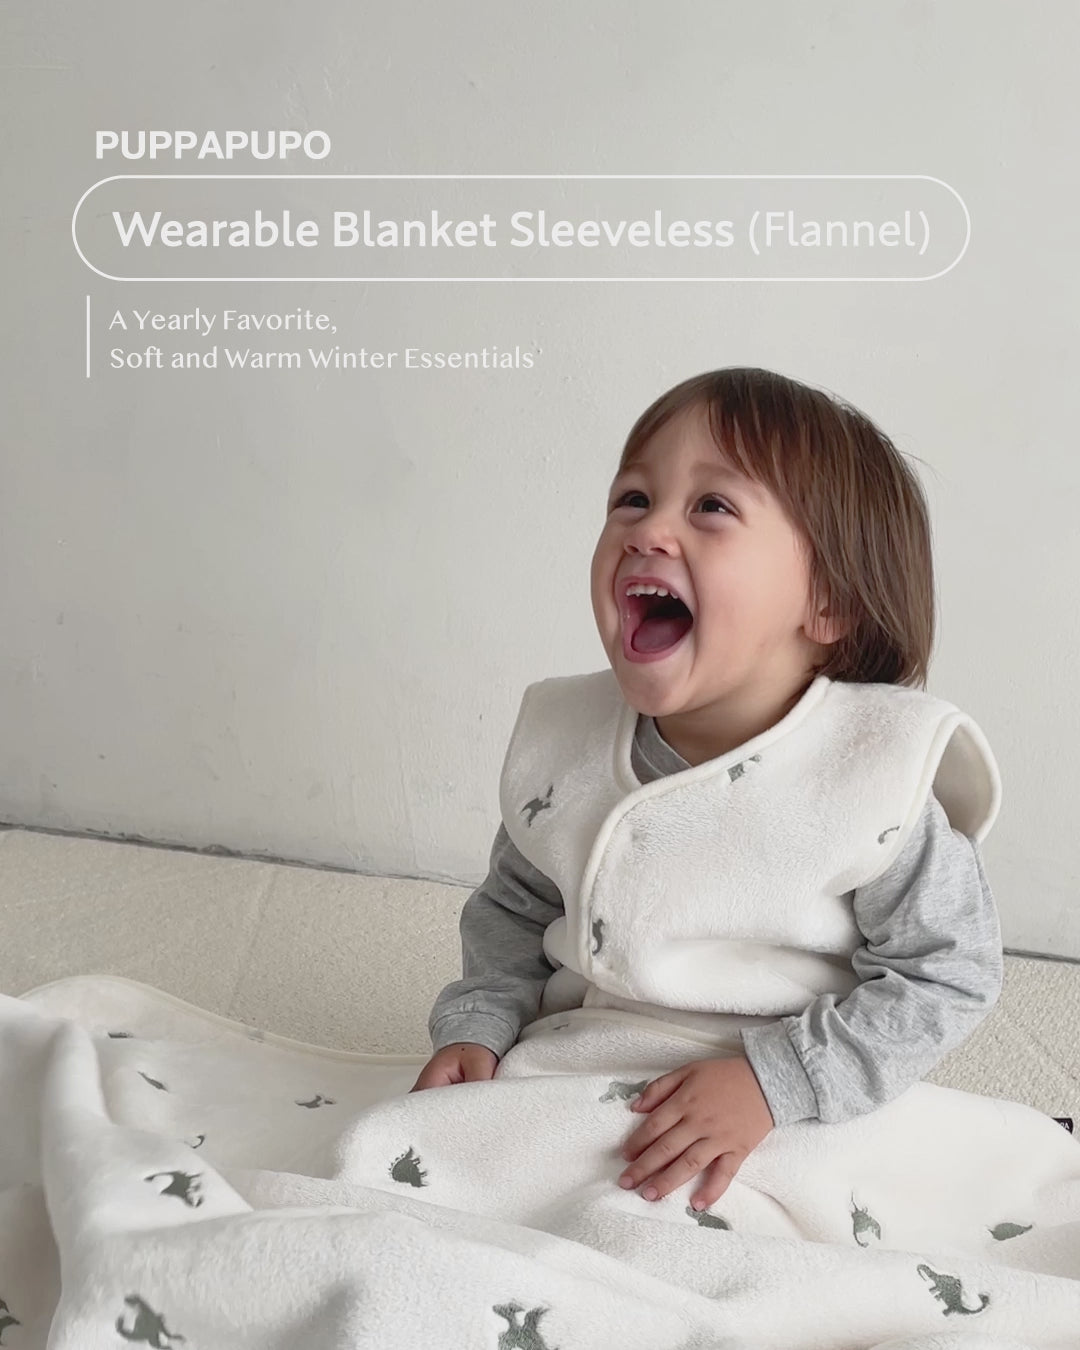 Wearable blanket sleeveless (Flannel)